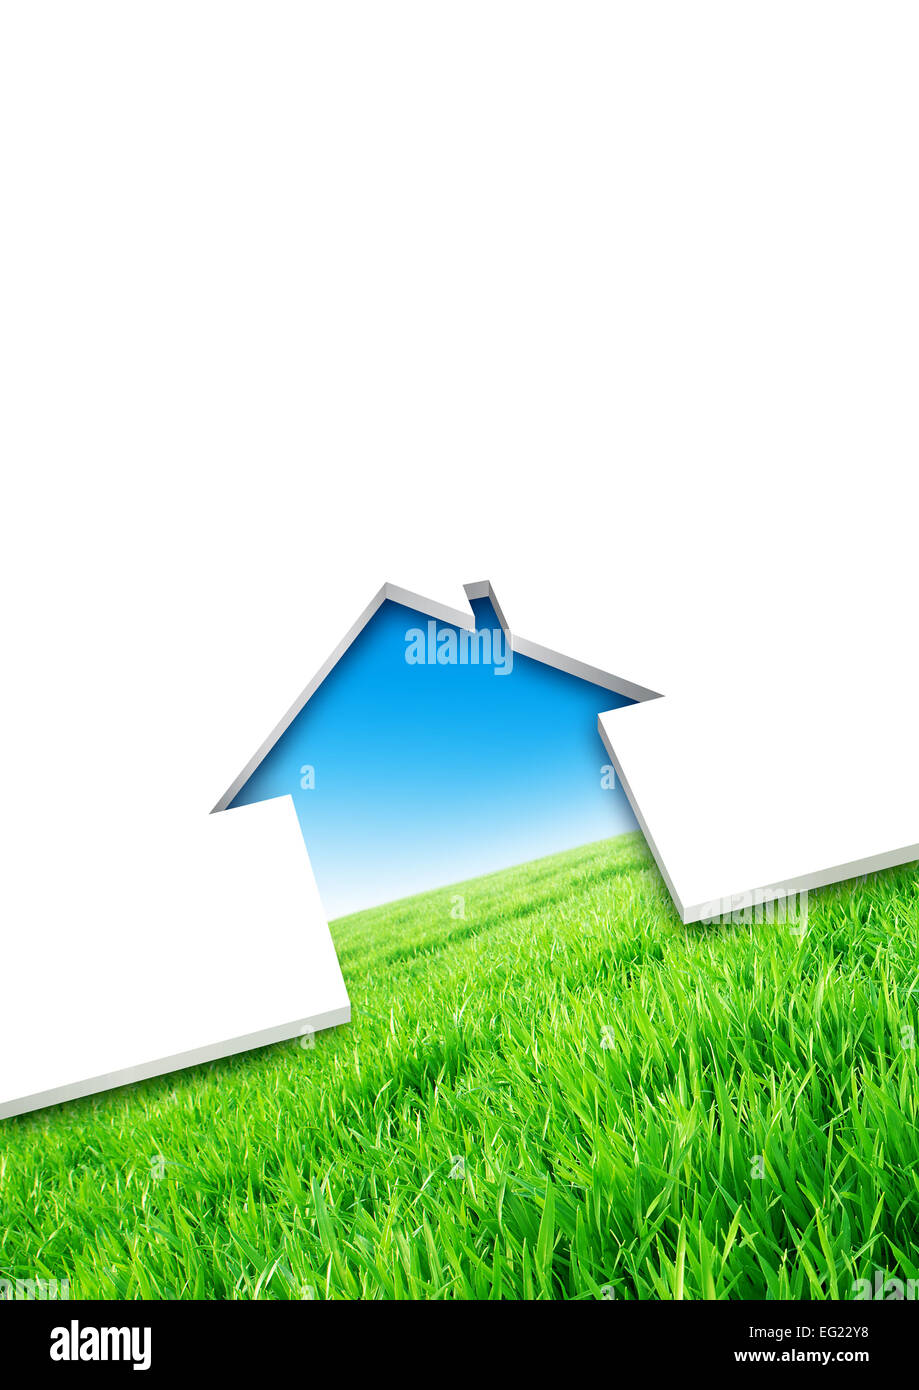 Öko-Haus-Konzept. Schneiden von einem leeren Blatt, Haus über einem grünen Feld Hintergrund geprägt Stockfoto